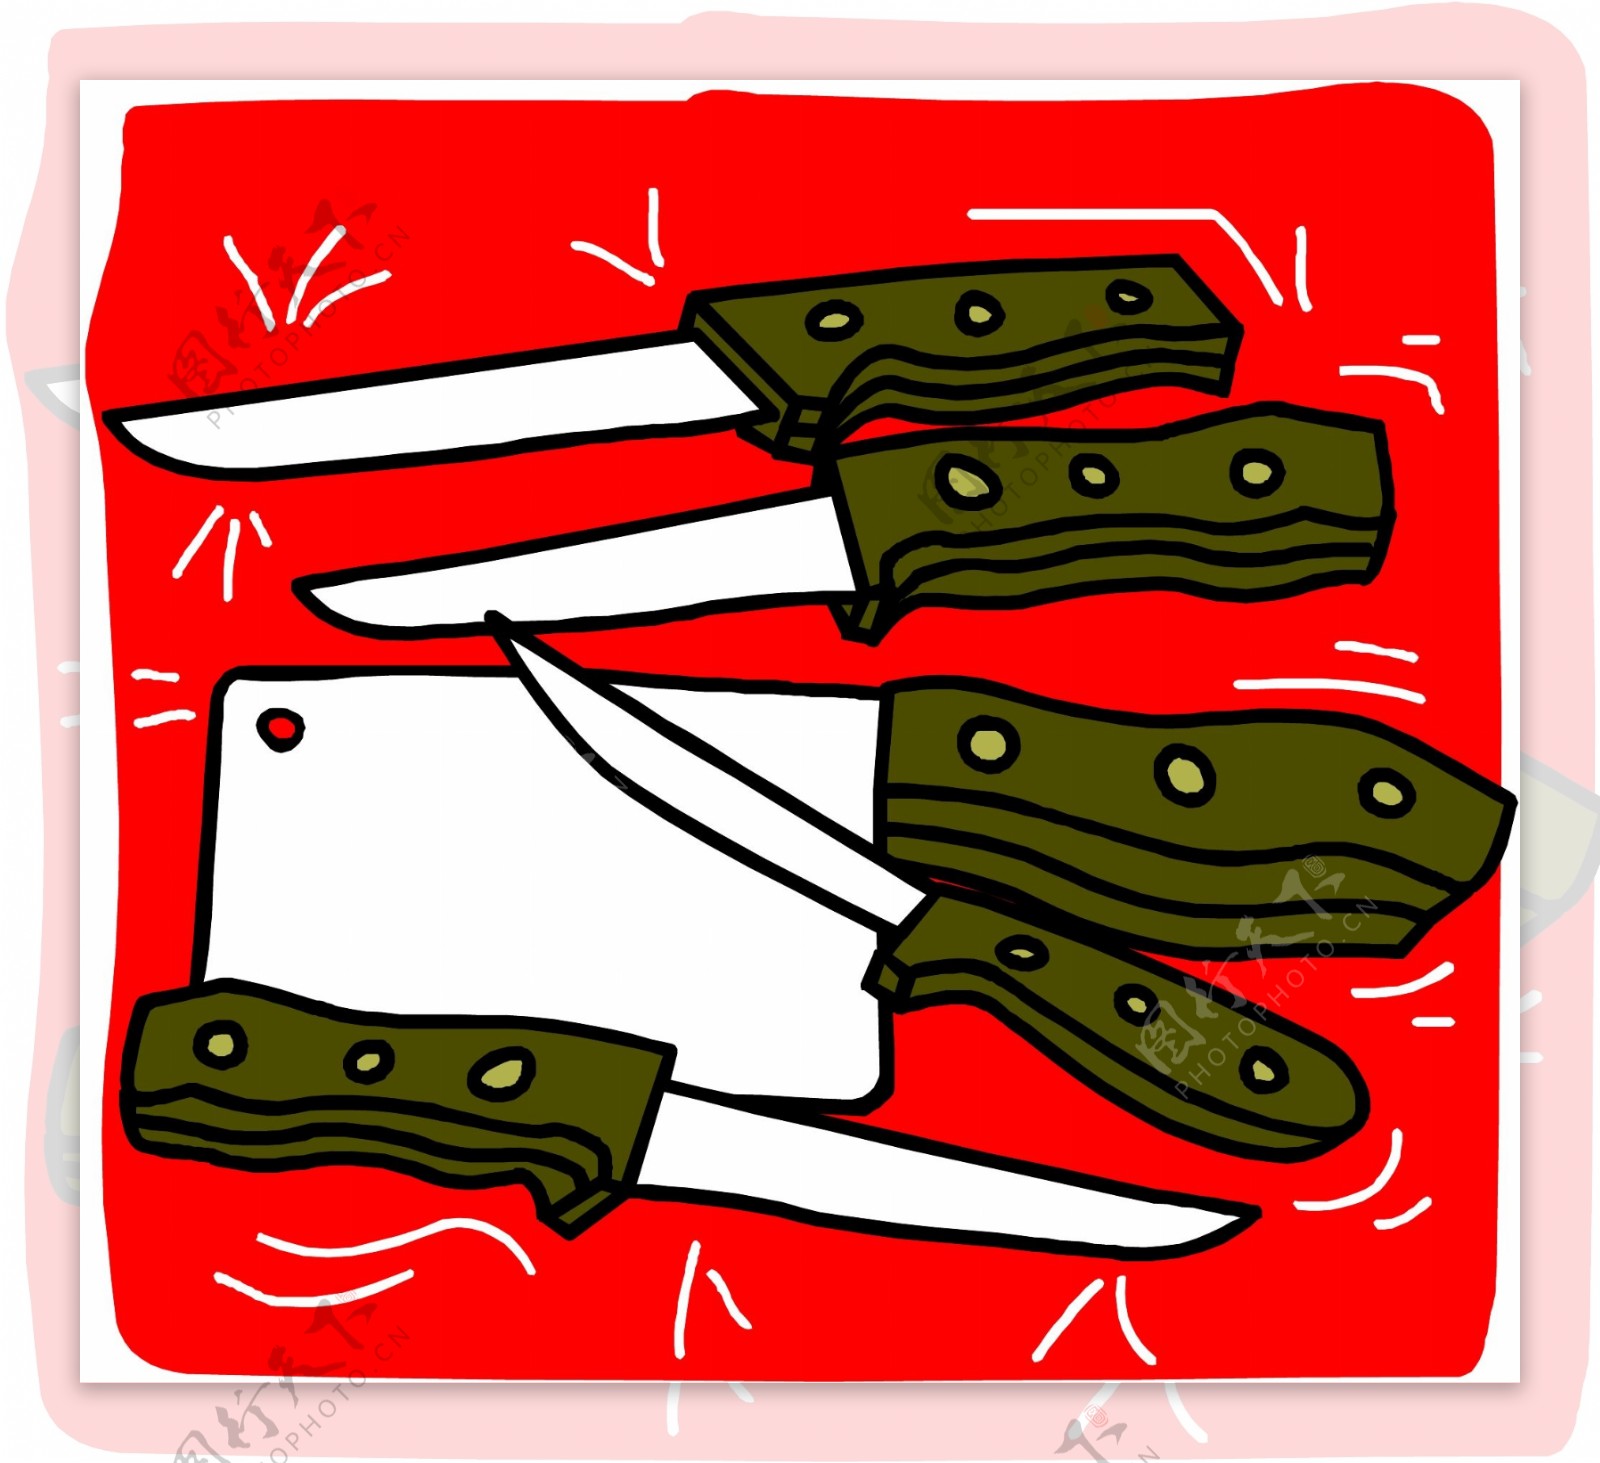 锅具筷子厨房刀具